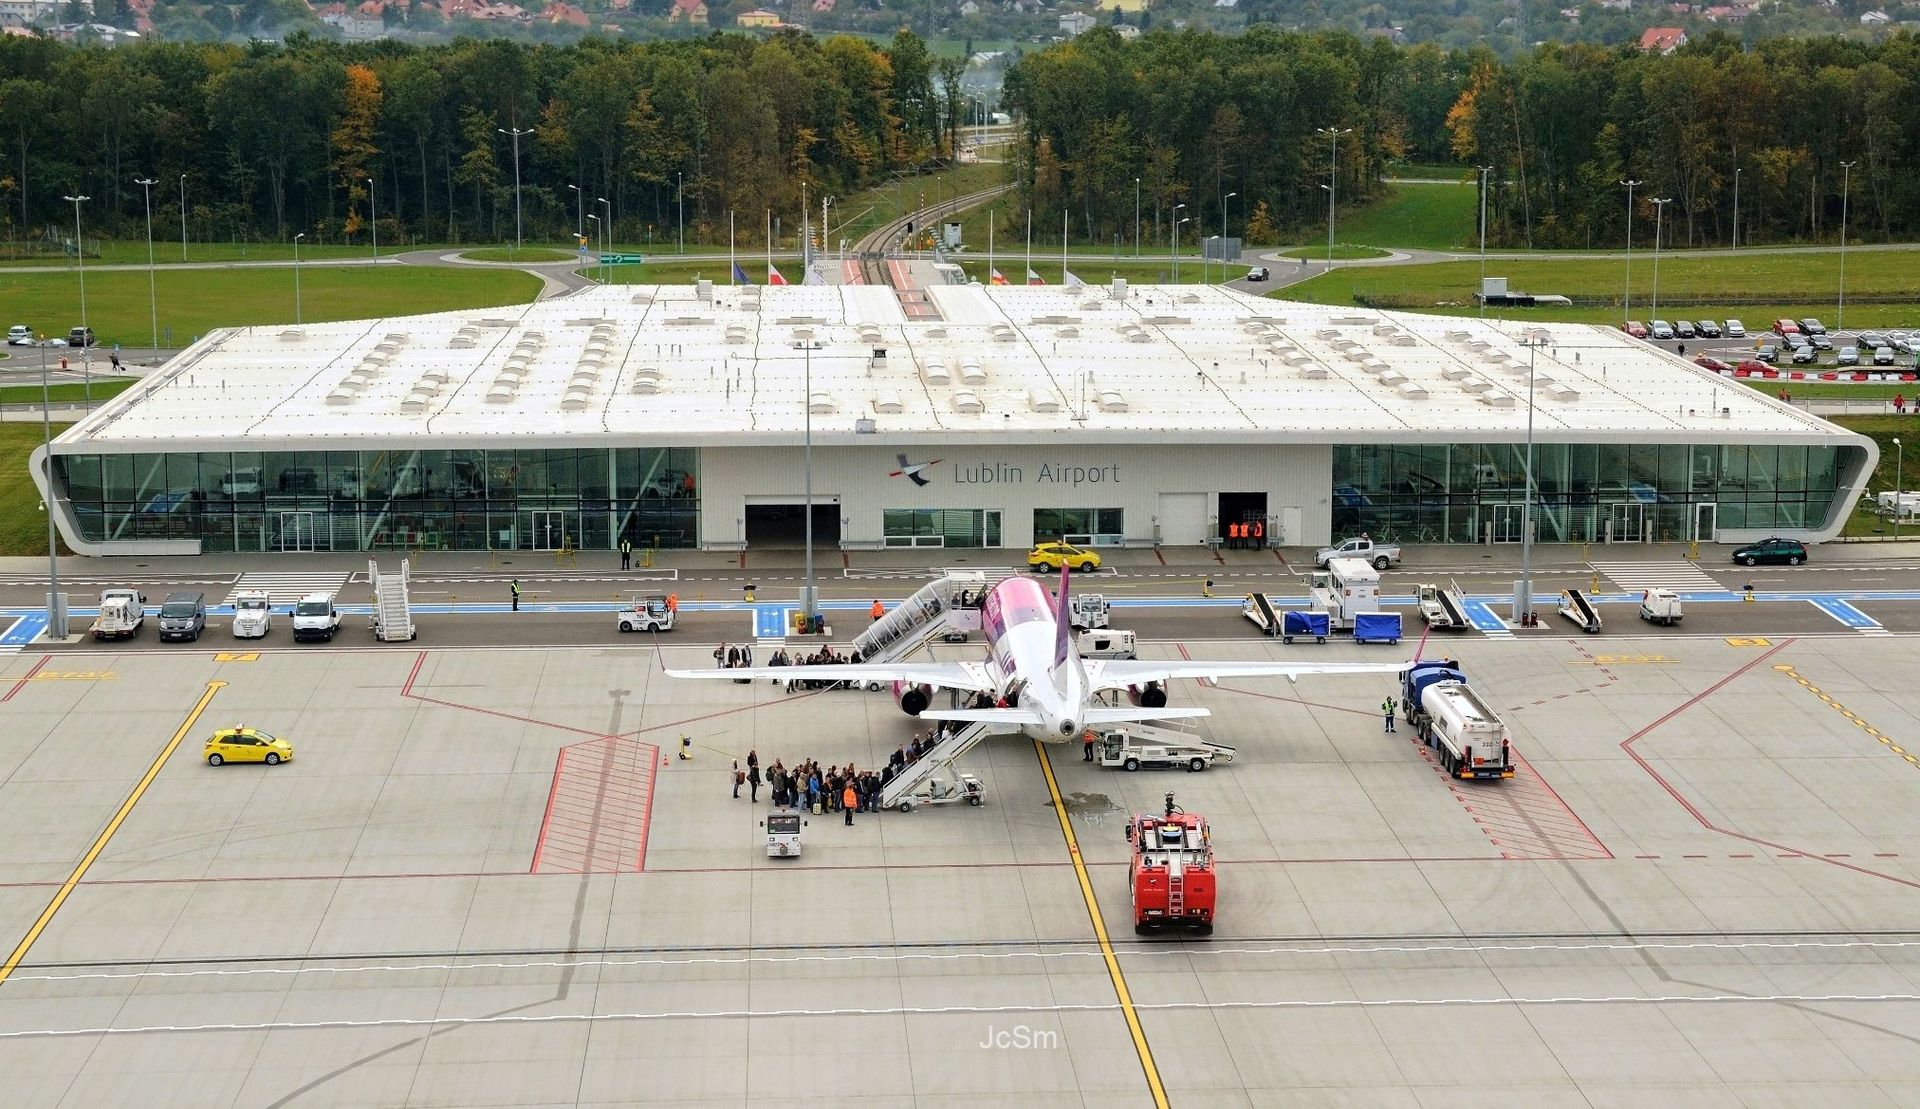  Port lotniczy w Lublinie w środę wznawia działalność